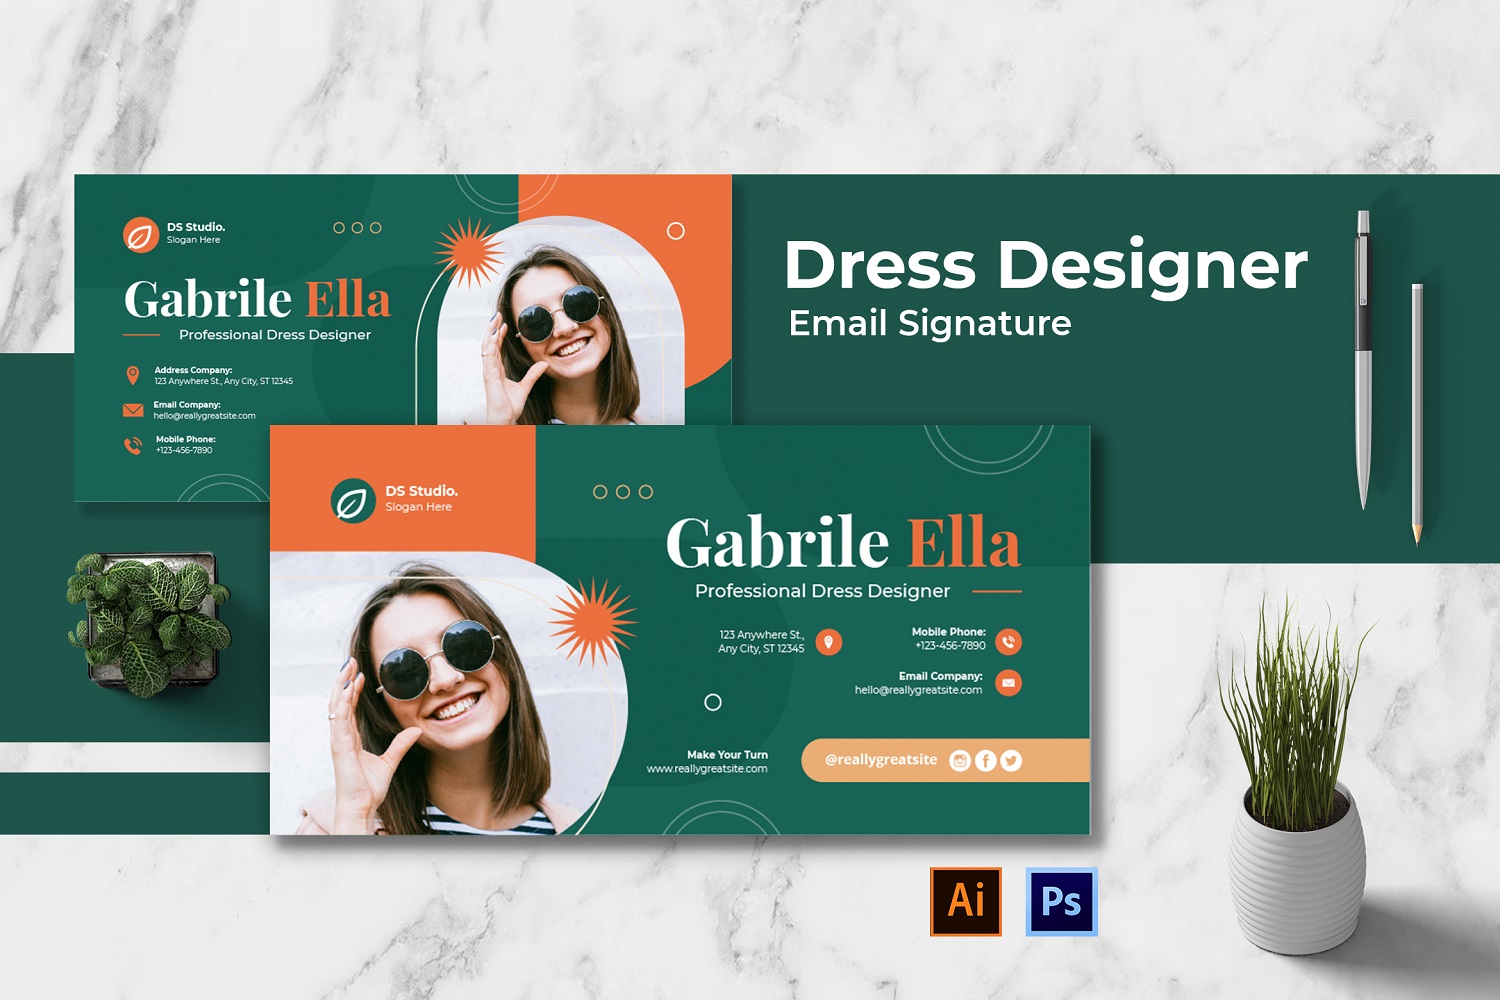 Dress Designer Email Signature